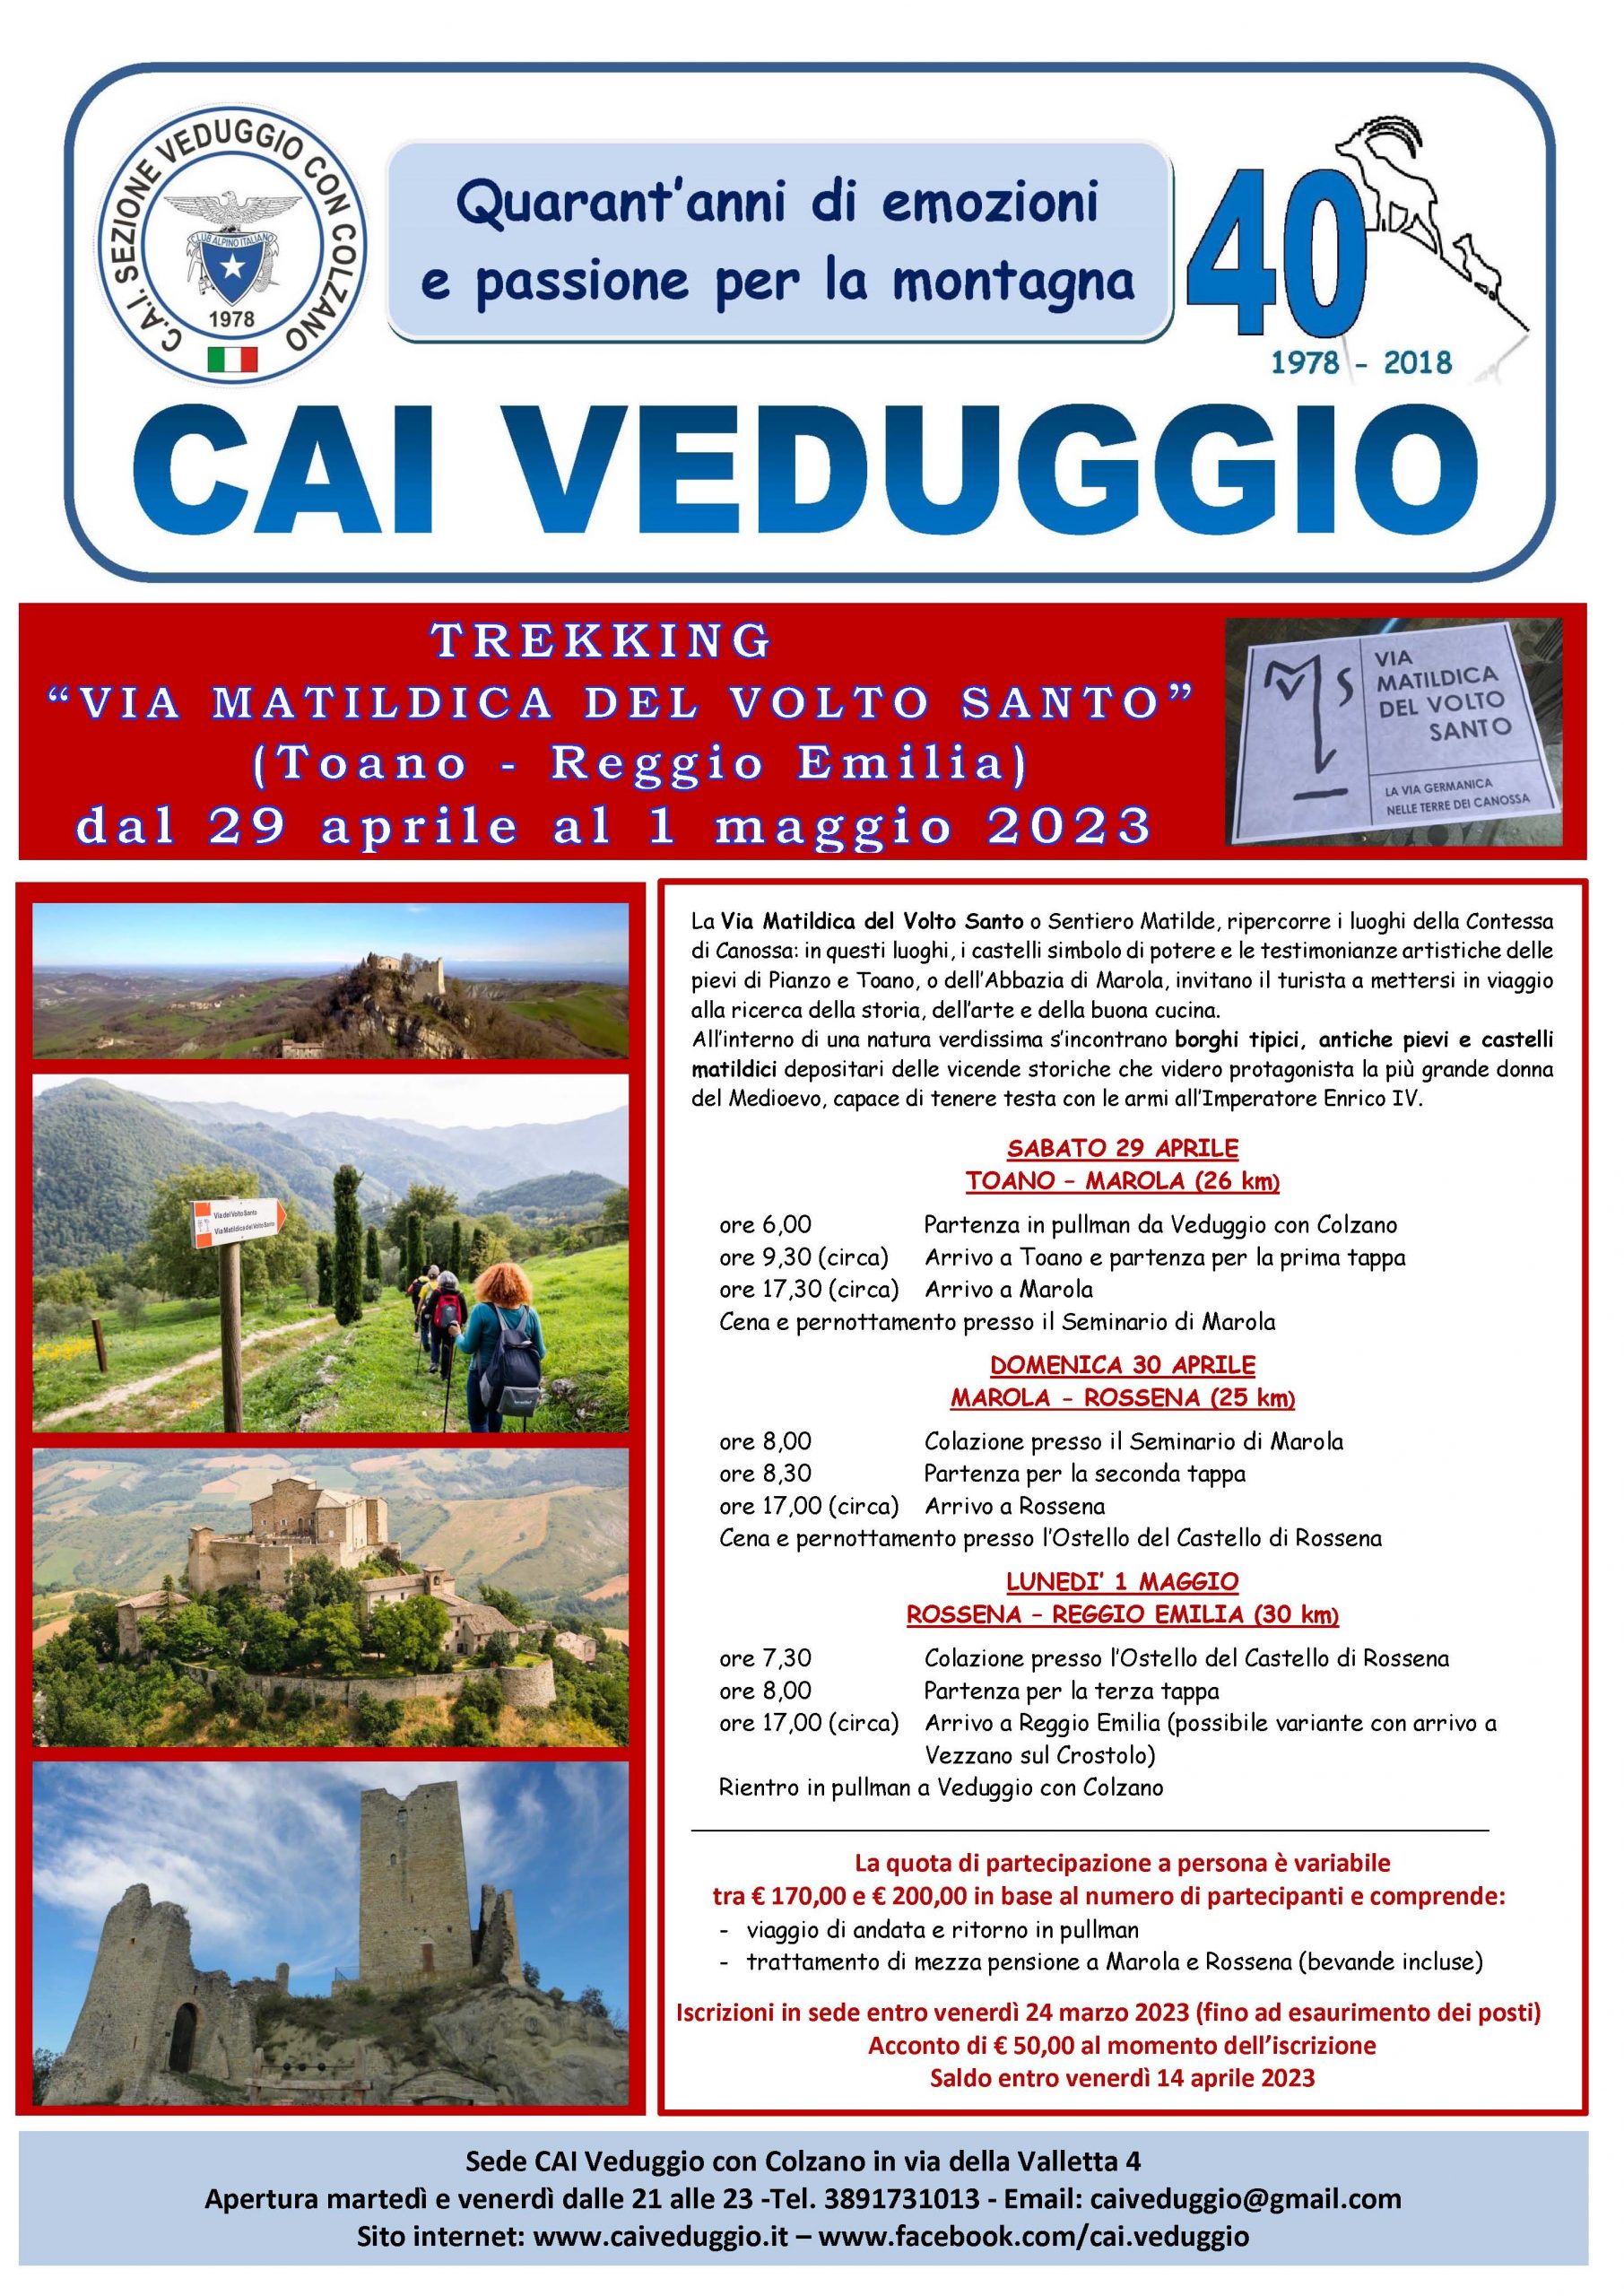 29/30 Aprile – 1 maggio 2023 – Trekking lungo la Via Matildica del Volto Santo (Sentiero Matilde) da Toano a Reggio Emilia